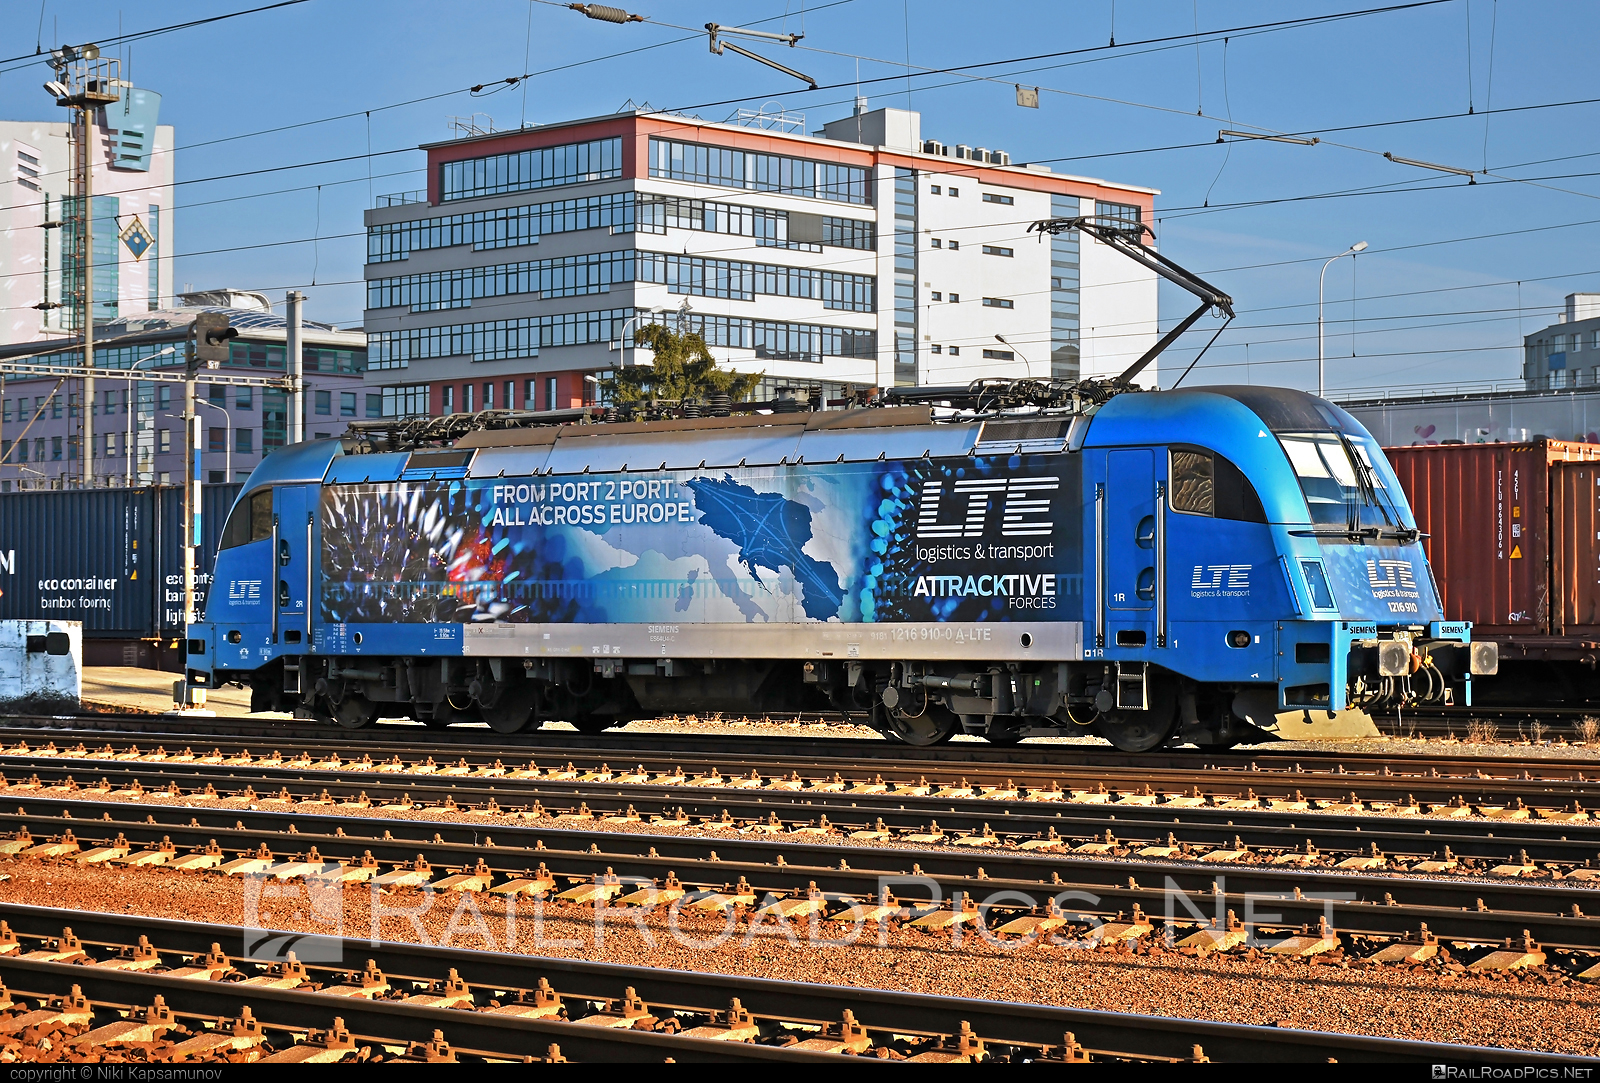 Siemens ES 64 U4 - 1216 910 operated by LTE Logistik und Transport GmbH #es64 #es64u4 #eurosprinter #lte #ltelogistikundtransport #ltelogistikundtransportgmbh #siemens #siemenses64 #siemenses64u4 #siemenstaurus #taurus #tauruslocomotive